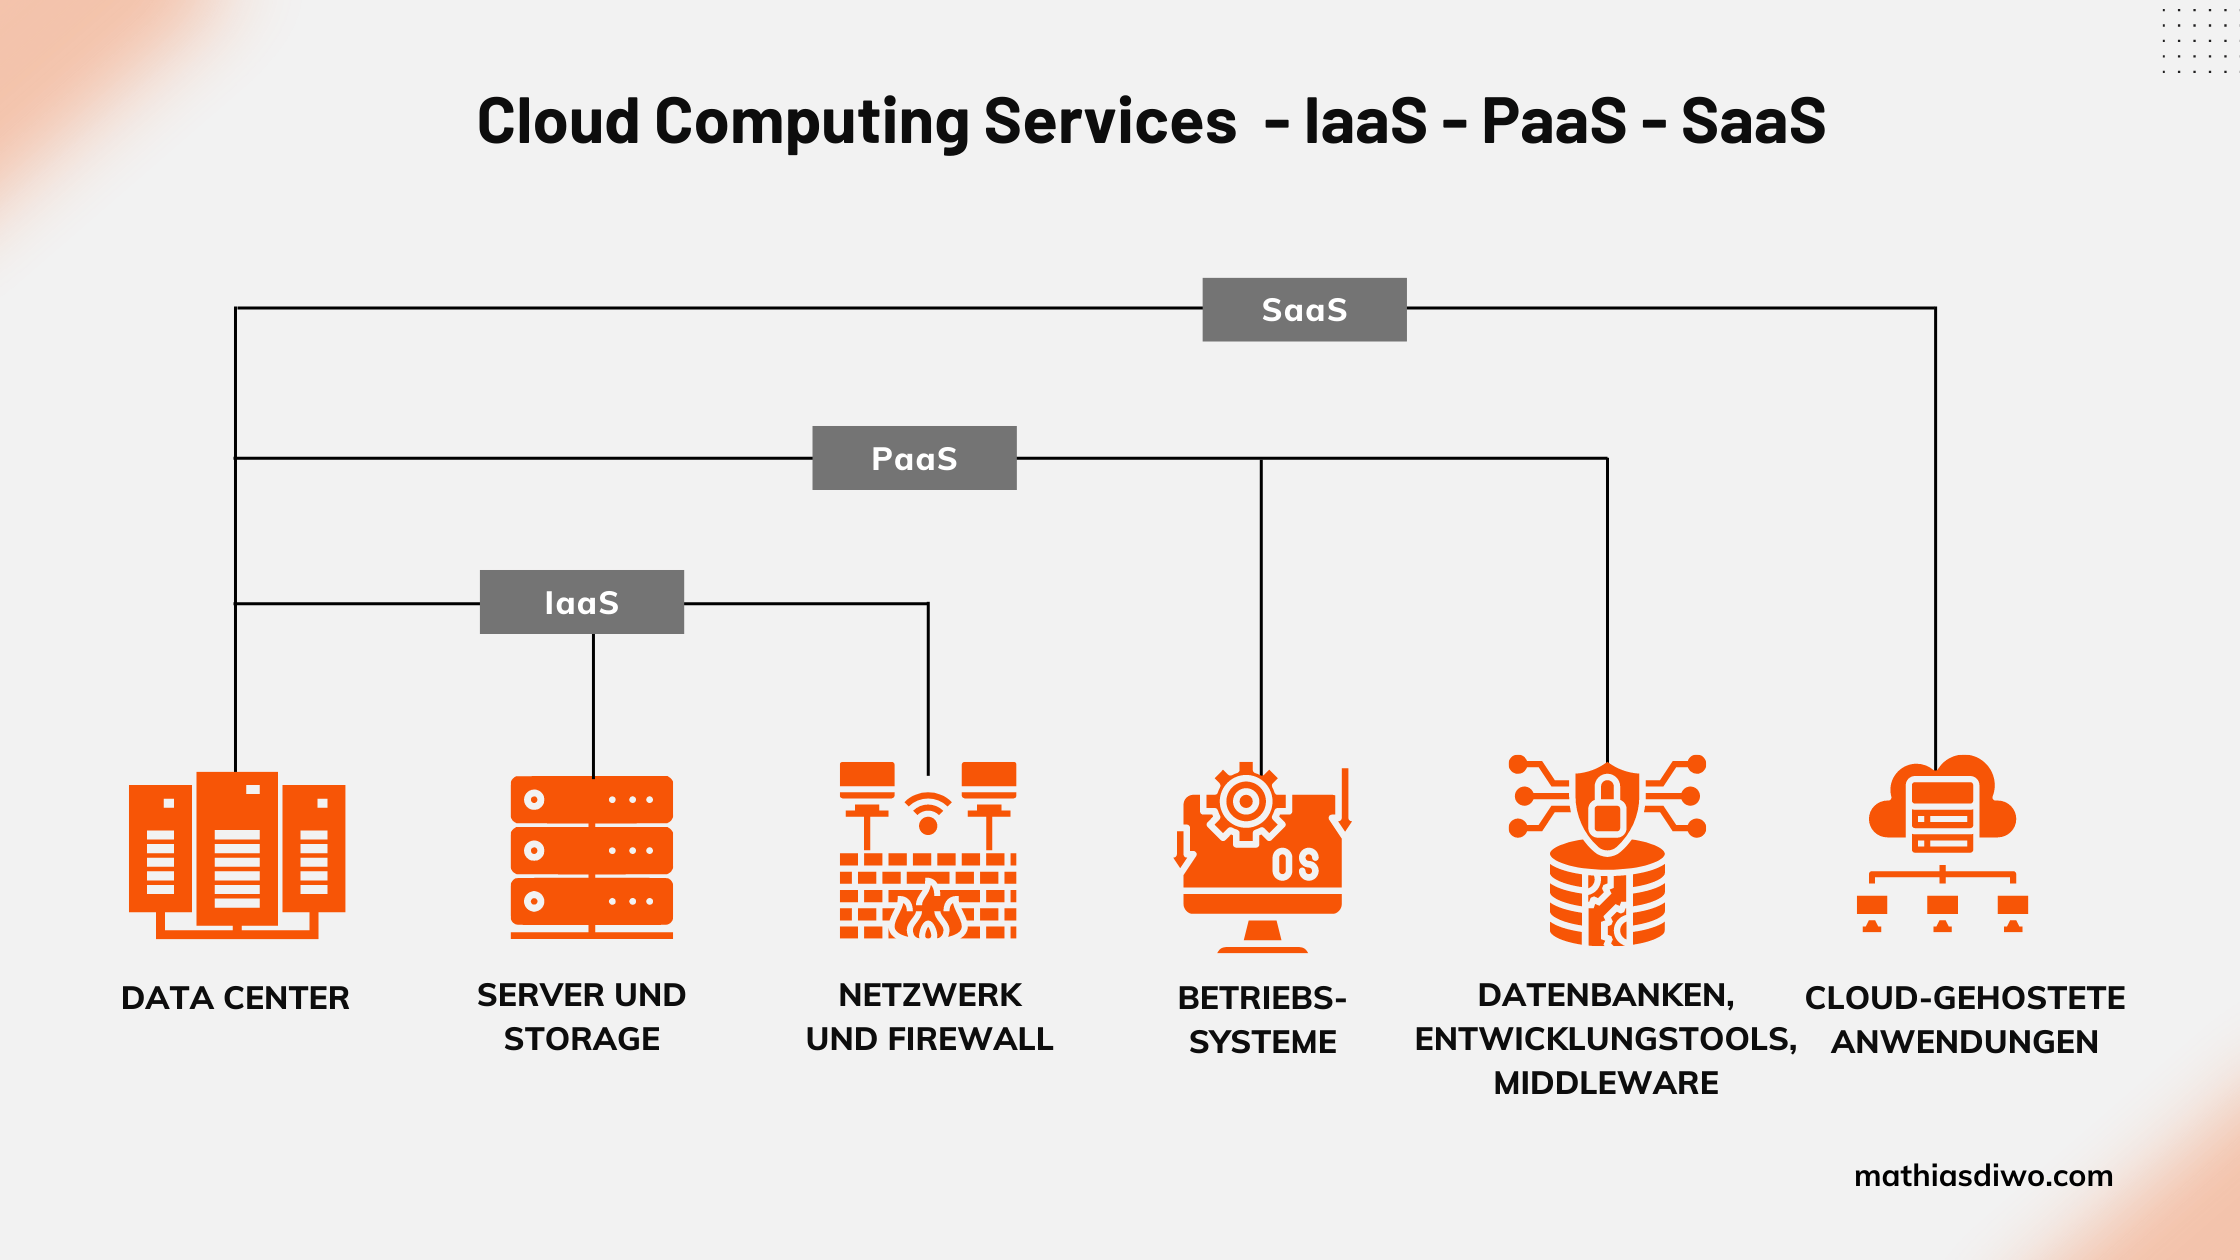 Cloud Computing Services - Iaas - PaaS - Saas